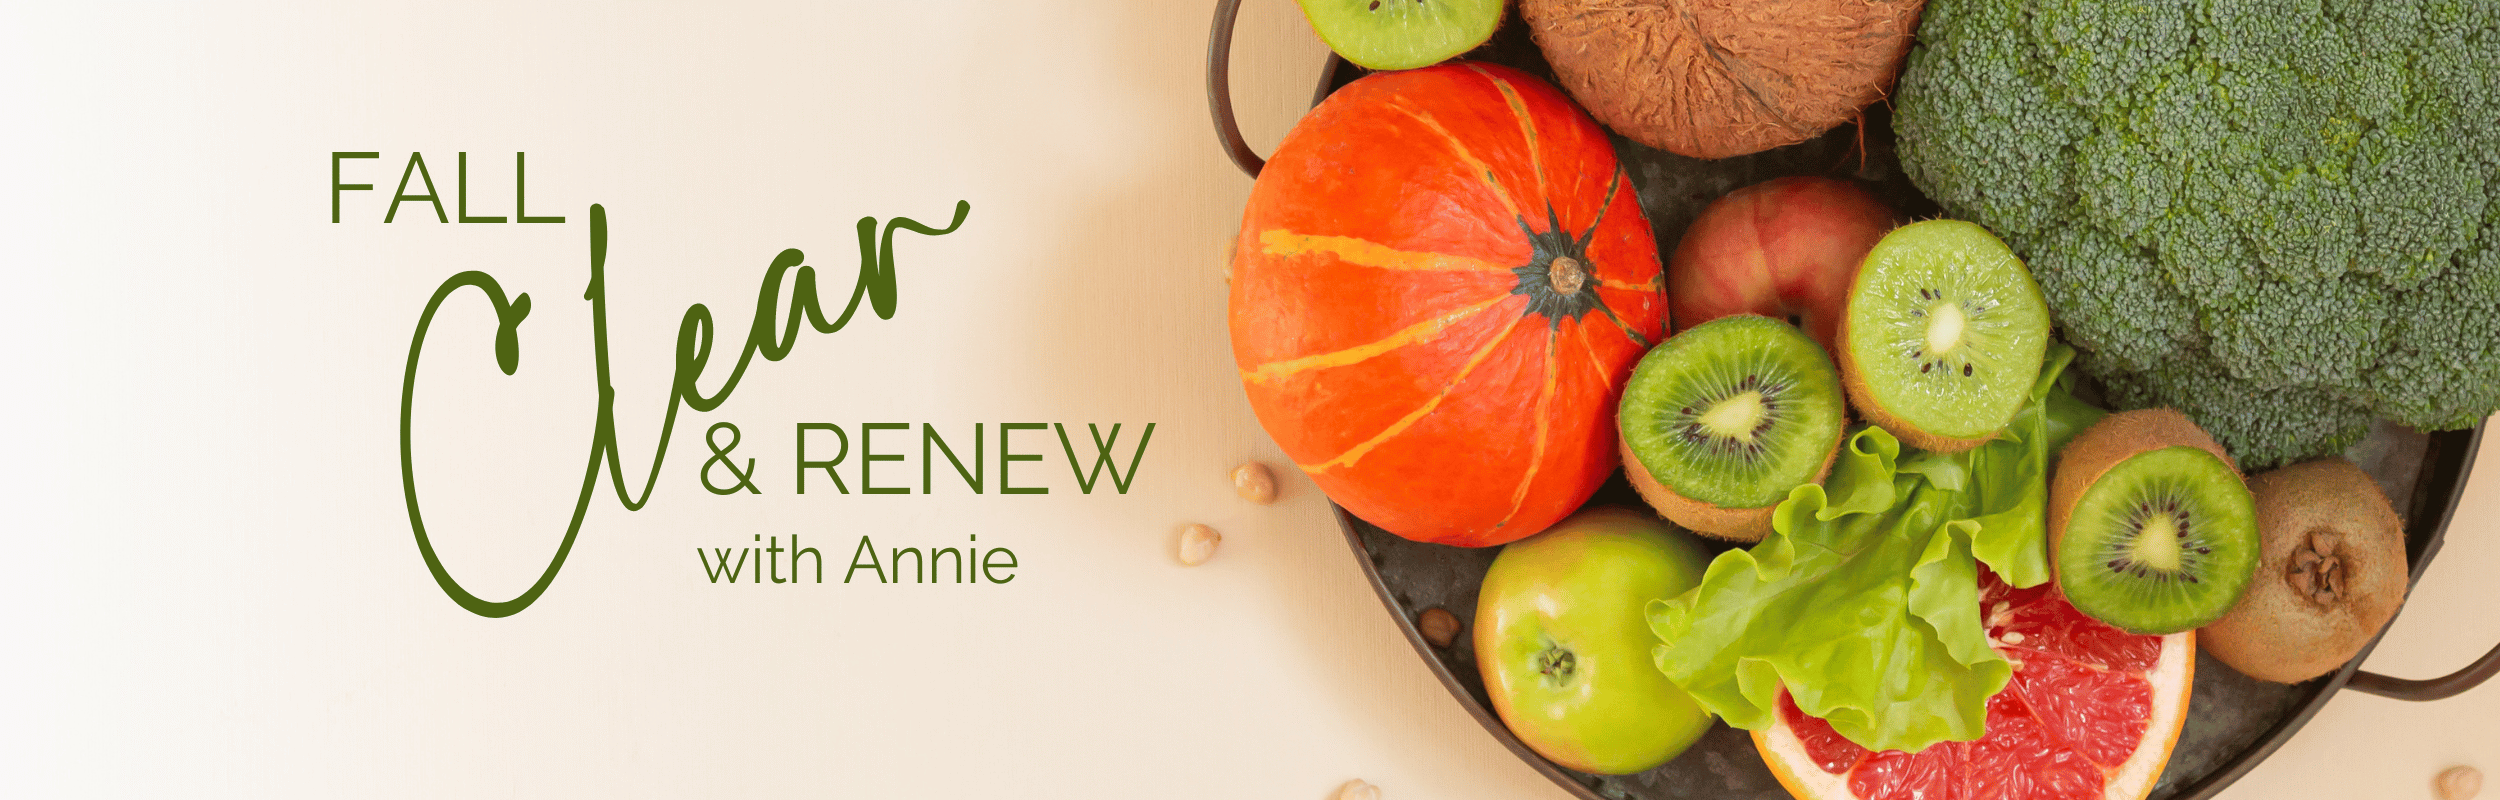 Fall Clear & Renew Annie B Kay